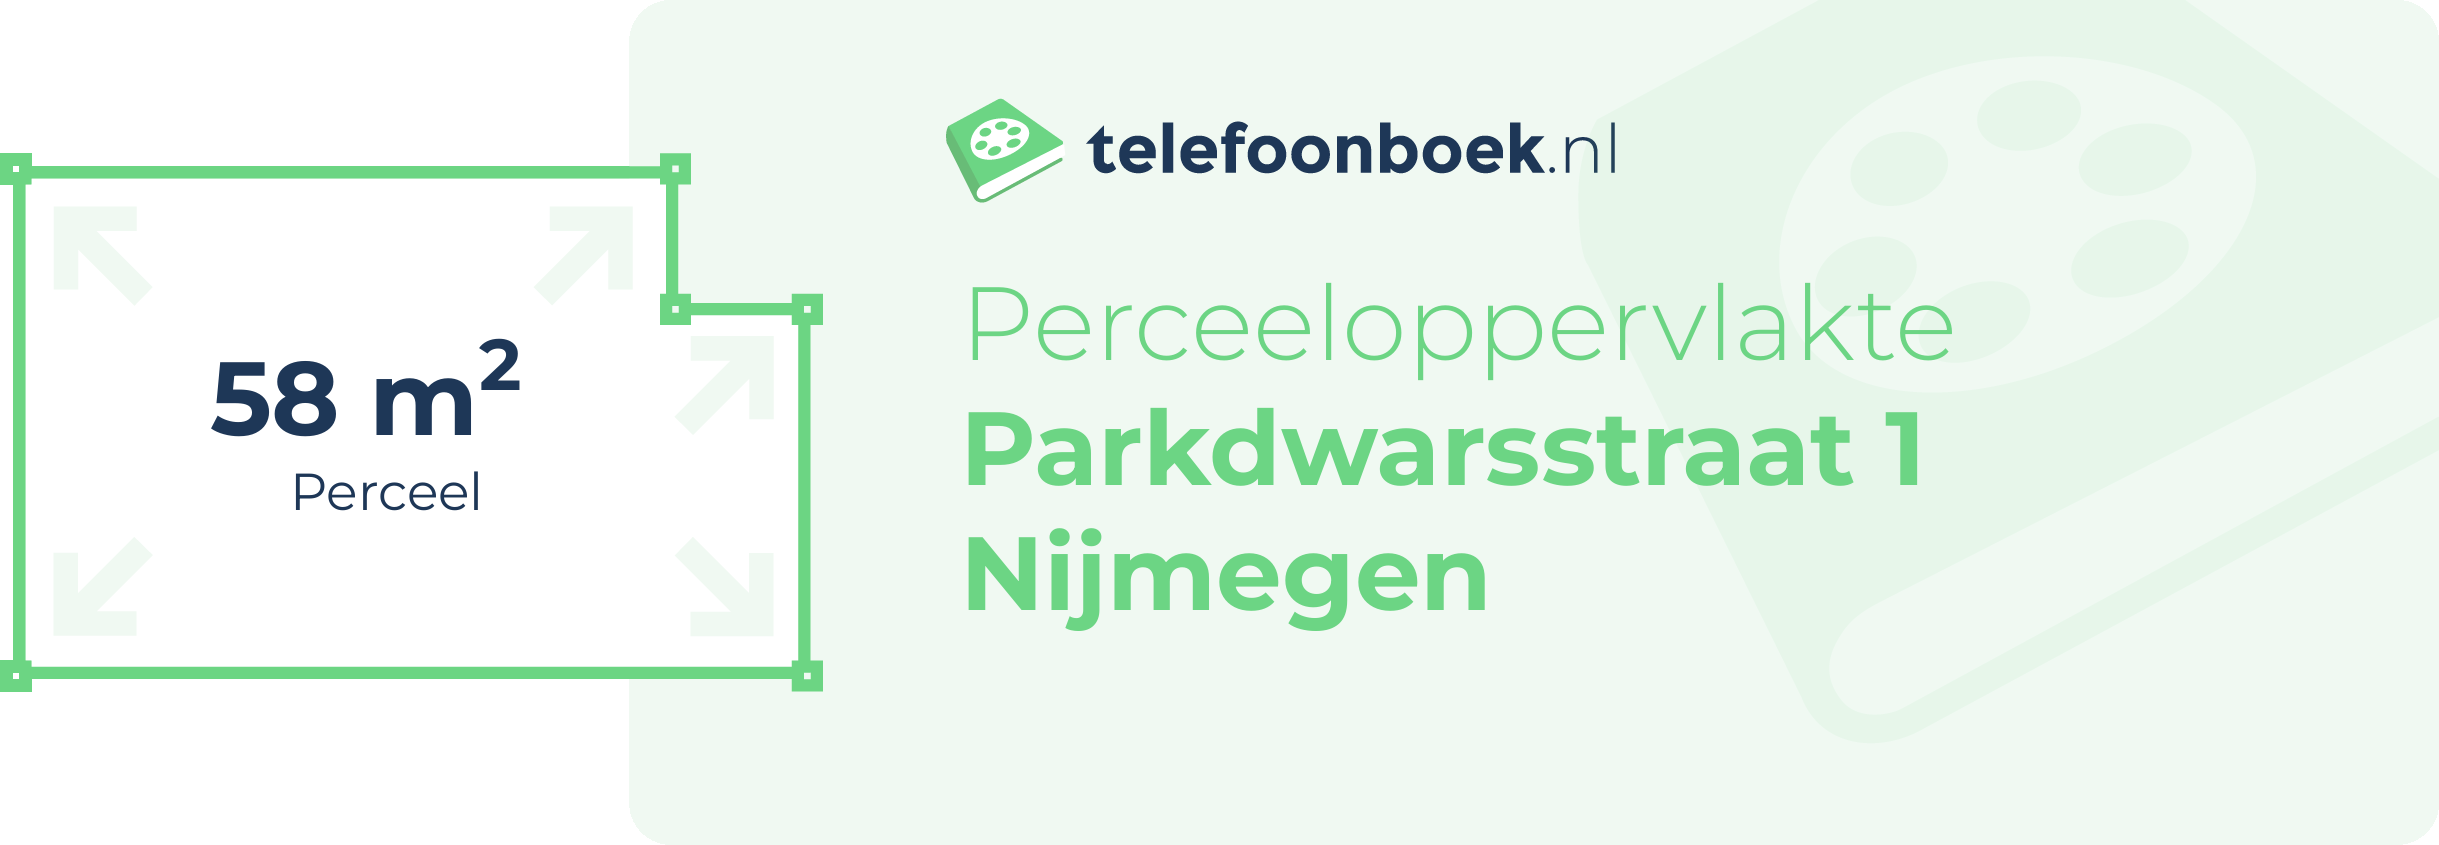 Perceeloppervlakte Parkdwarsstraat 1 Nijmegen